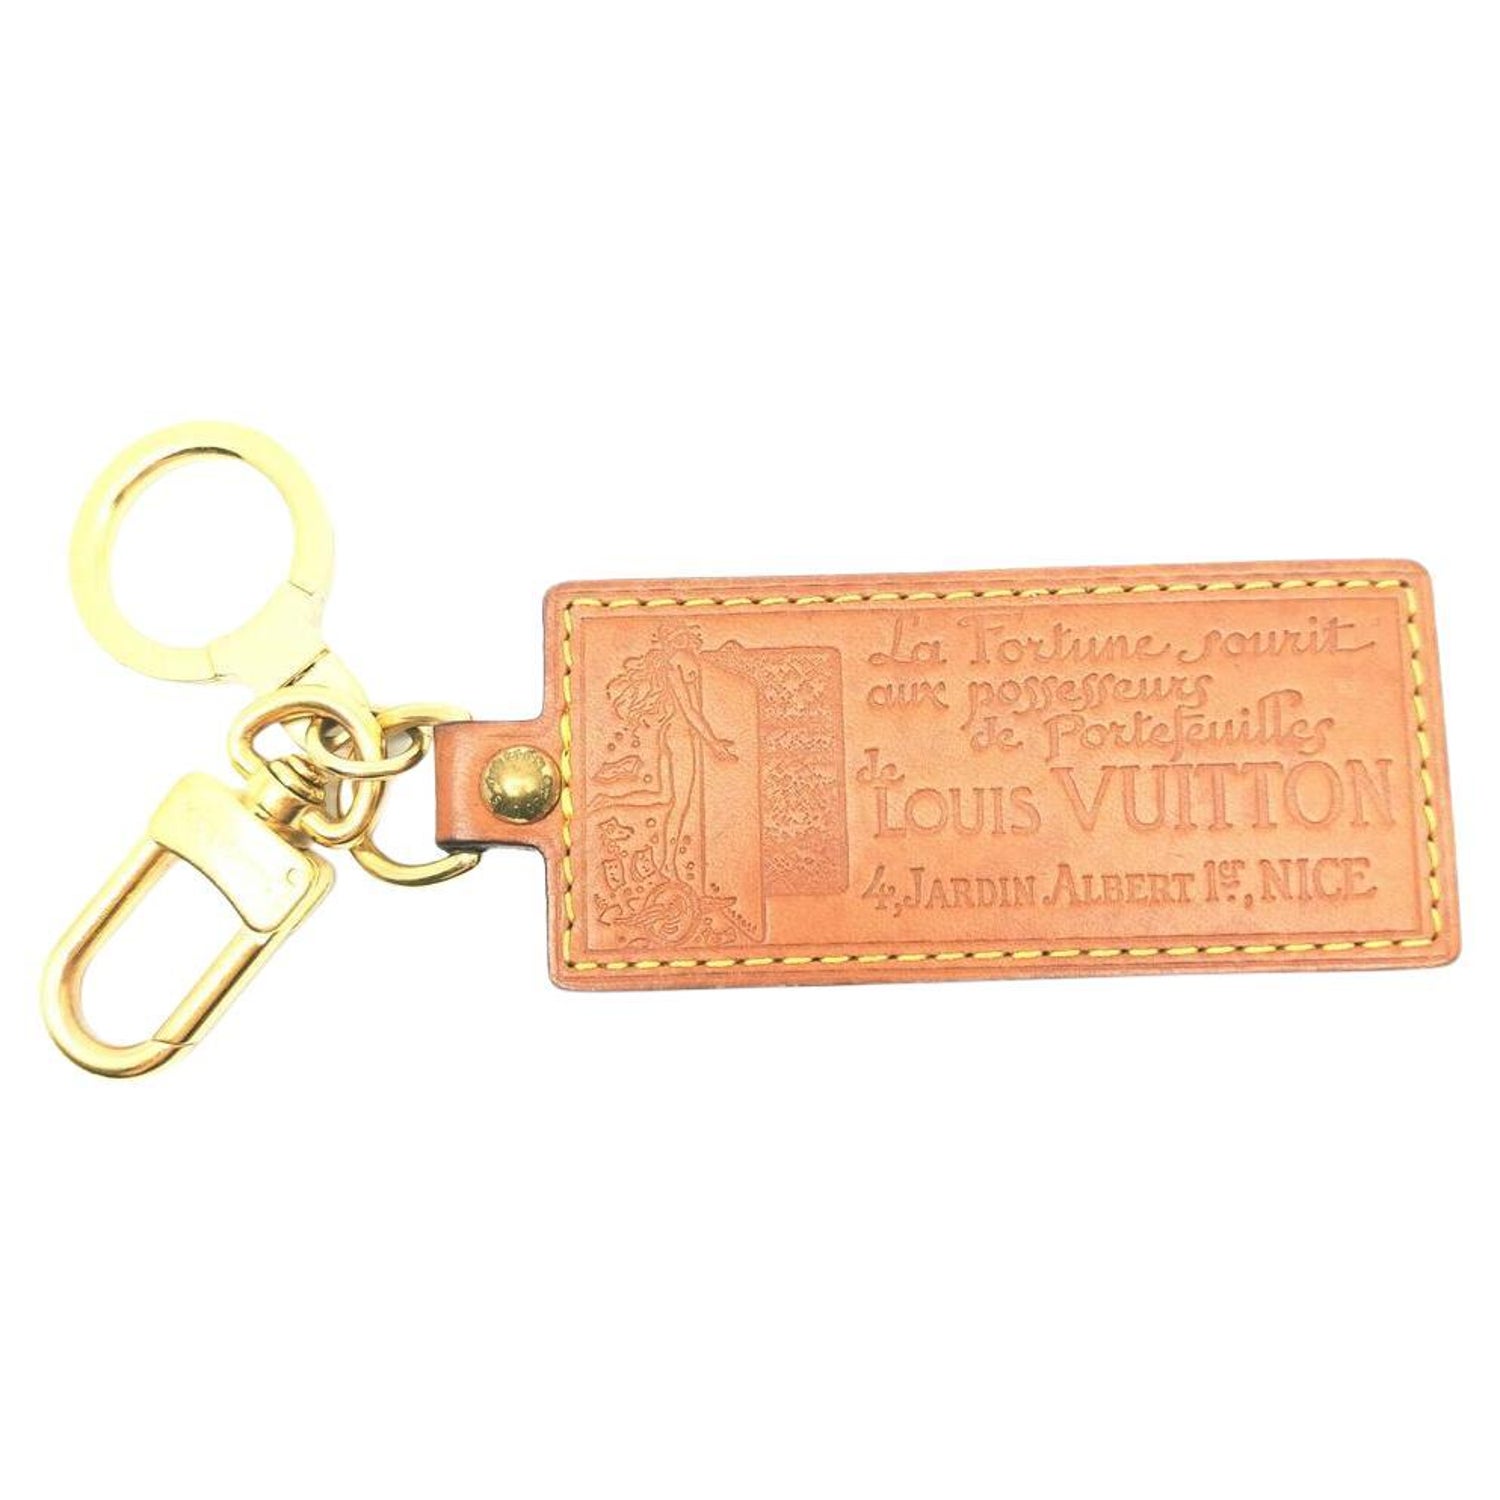 Louis Vuitton x Supreme Ultra Rare Supreme Box Logo Keychain Bag Charm  189lvs28